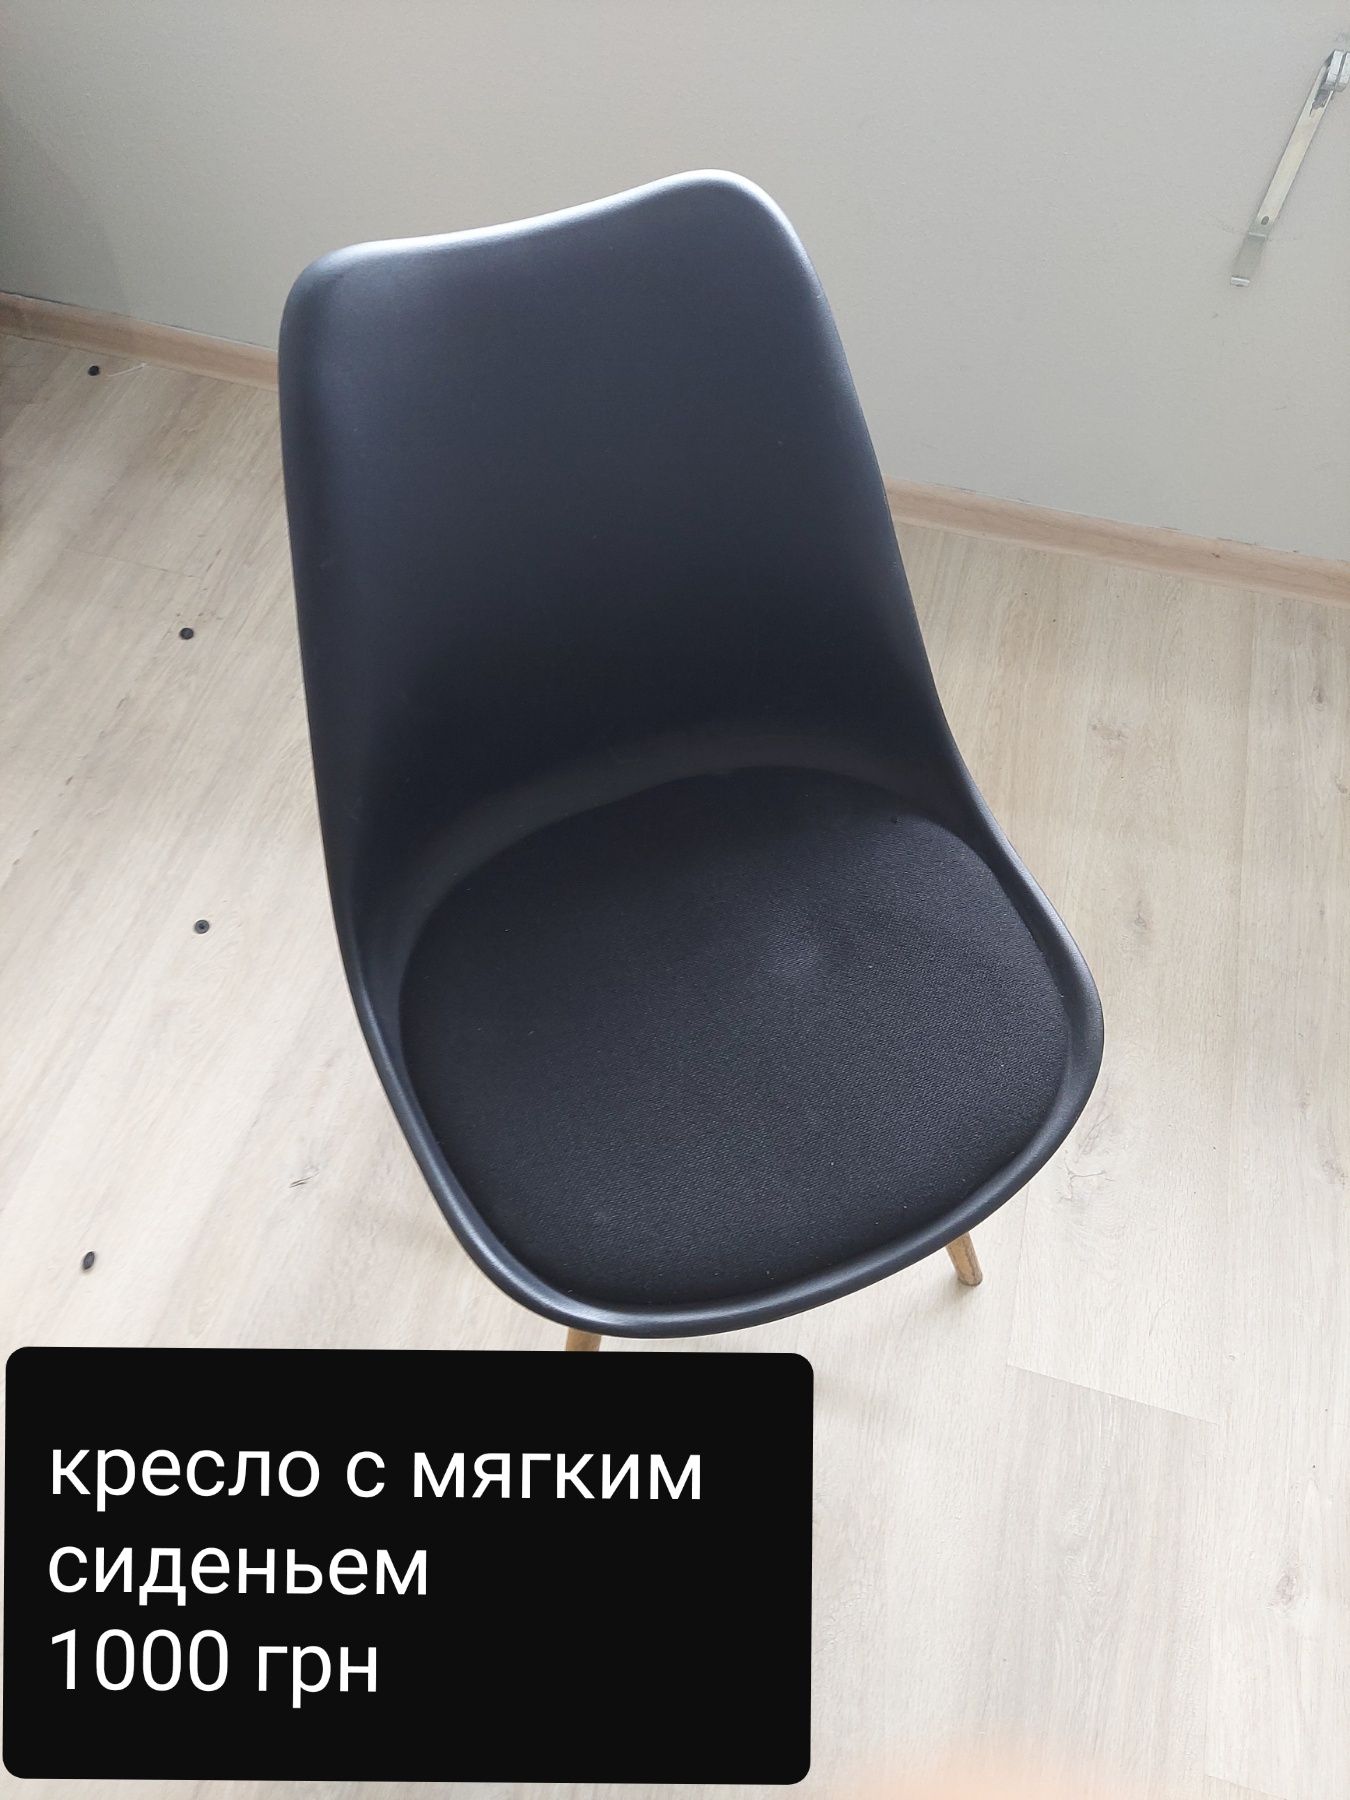 Продам стулья для офиса